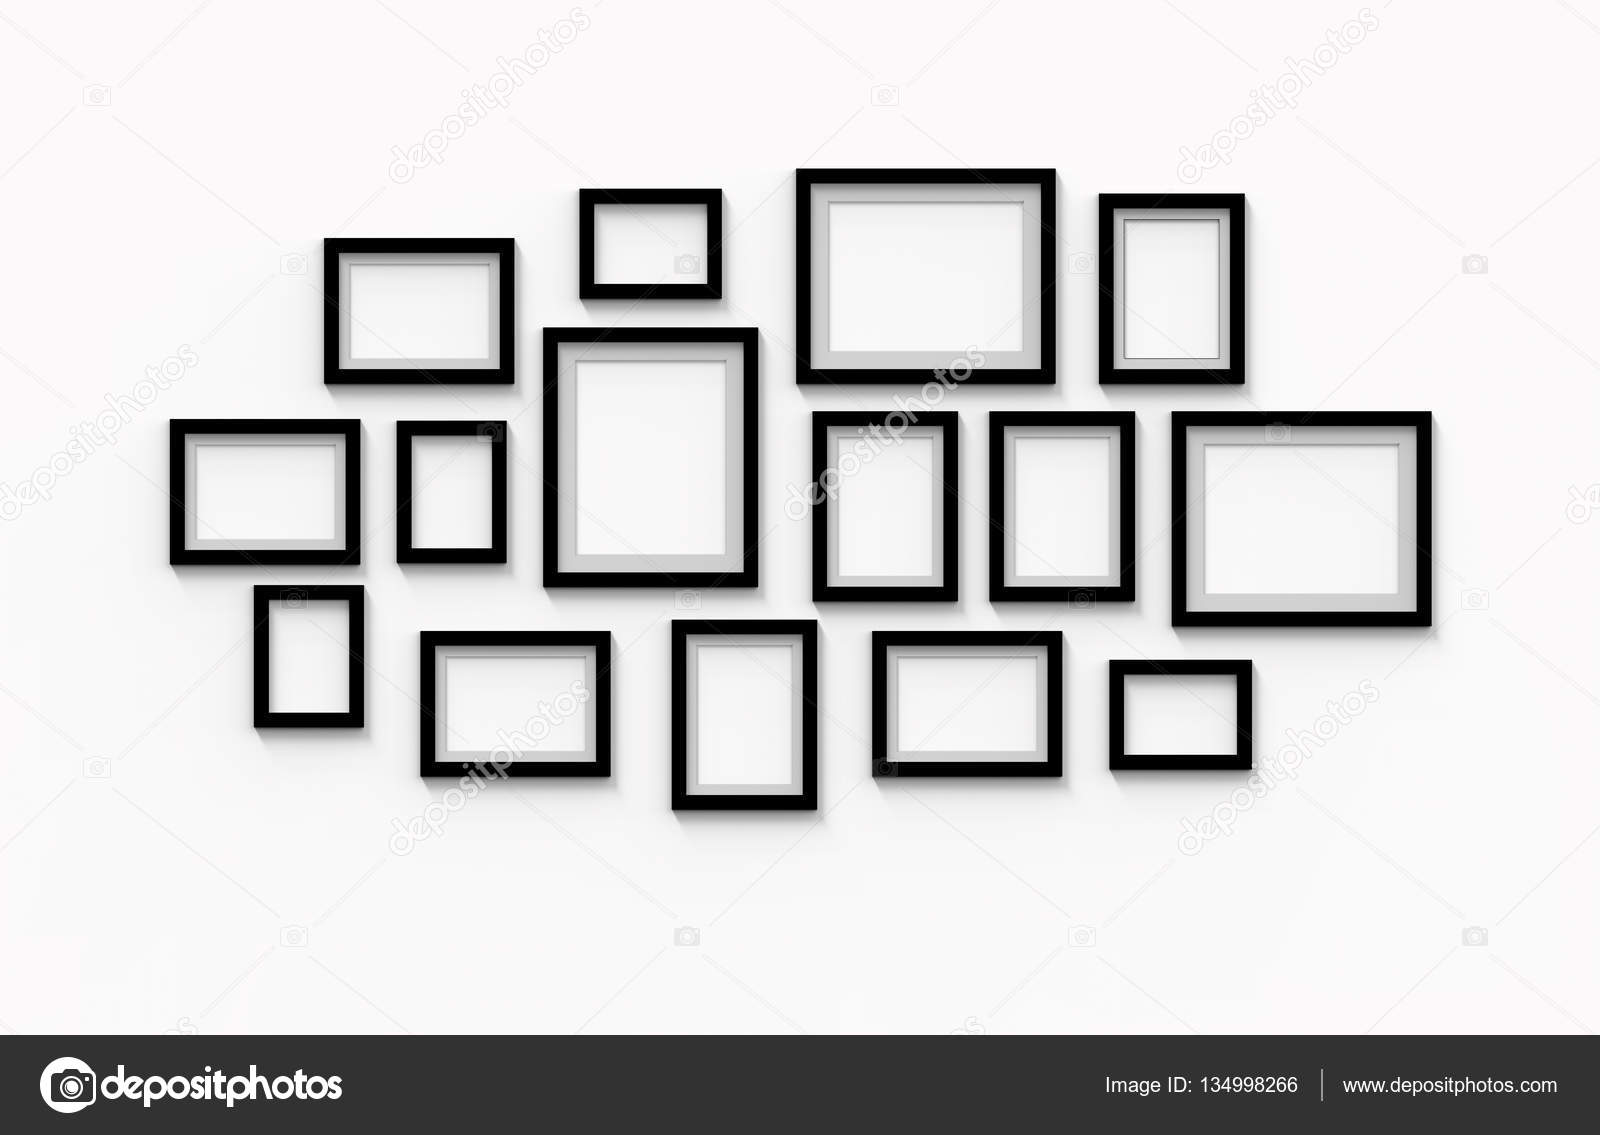 Many blank black frames Stock Photo by ©kchungtw 134998266